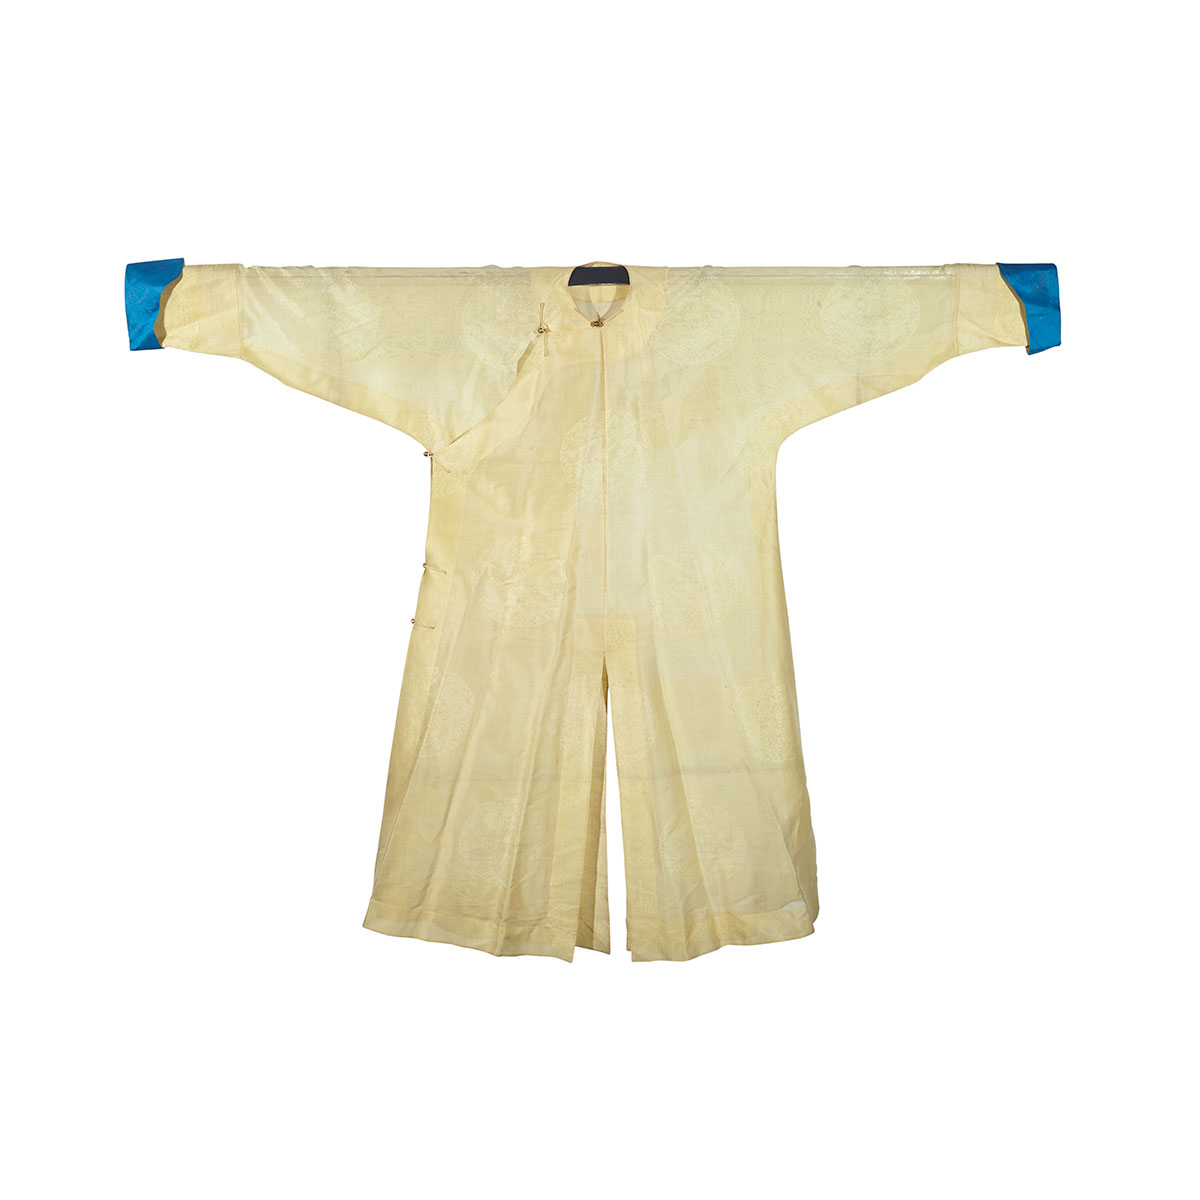 Yellow Ground Silk Damask Gentleman’s Summer Robe, 19th Century